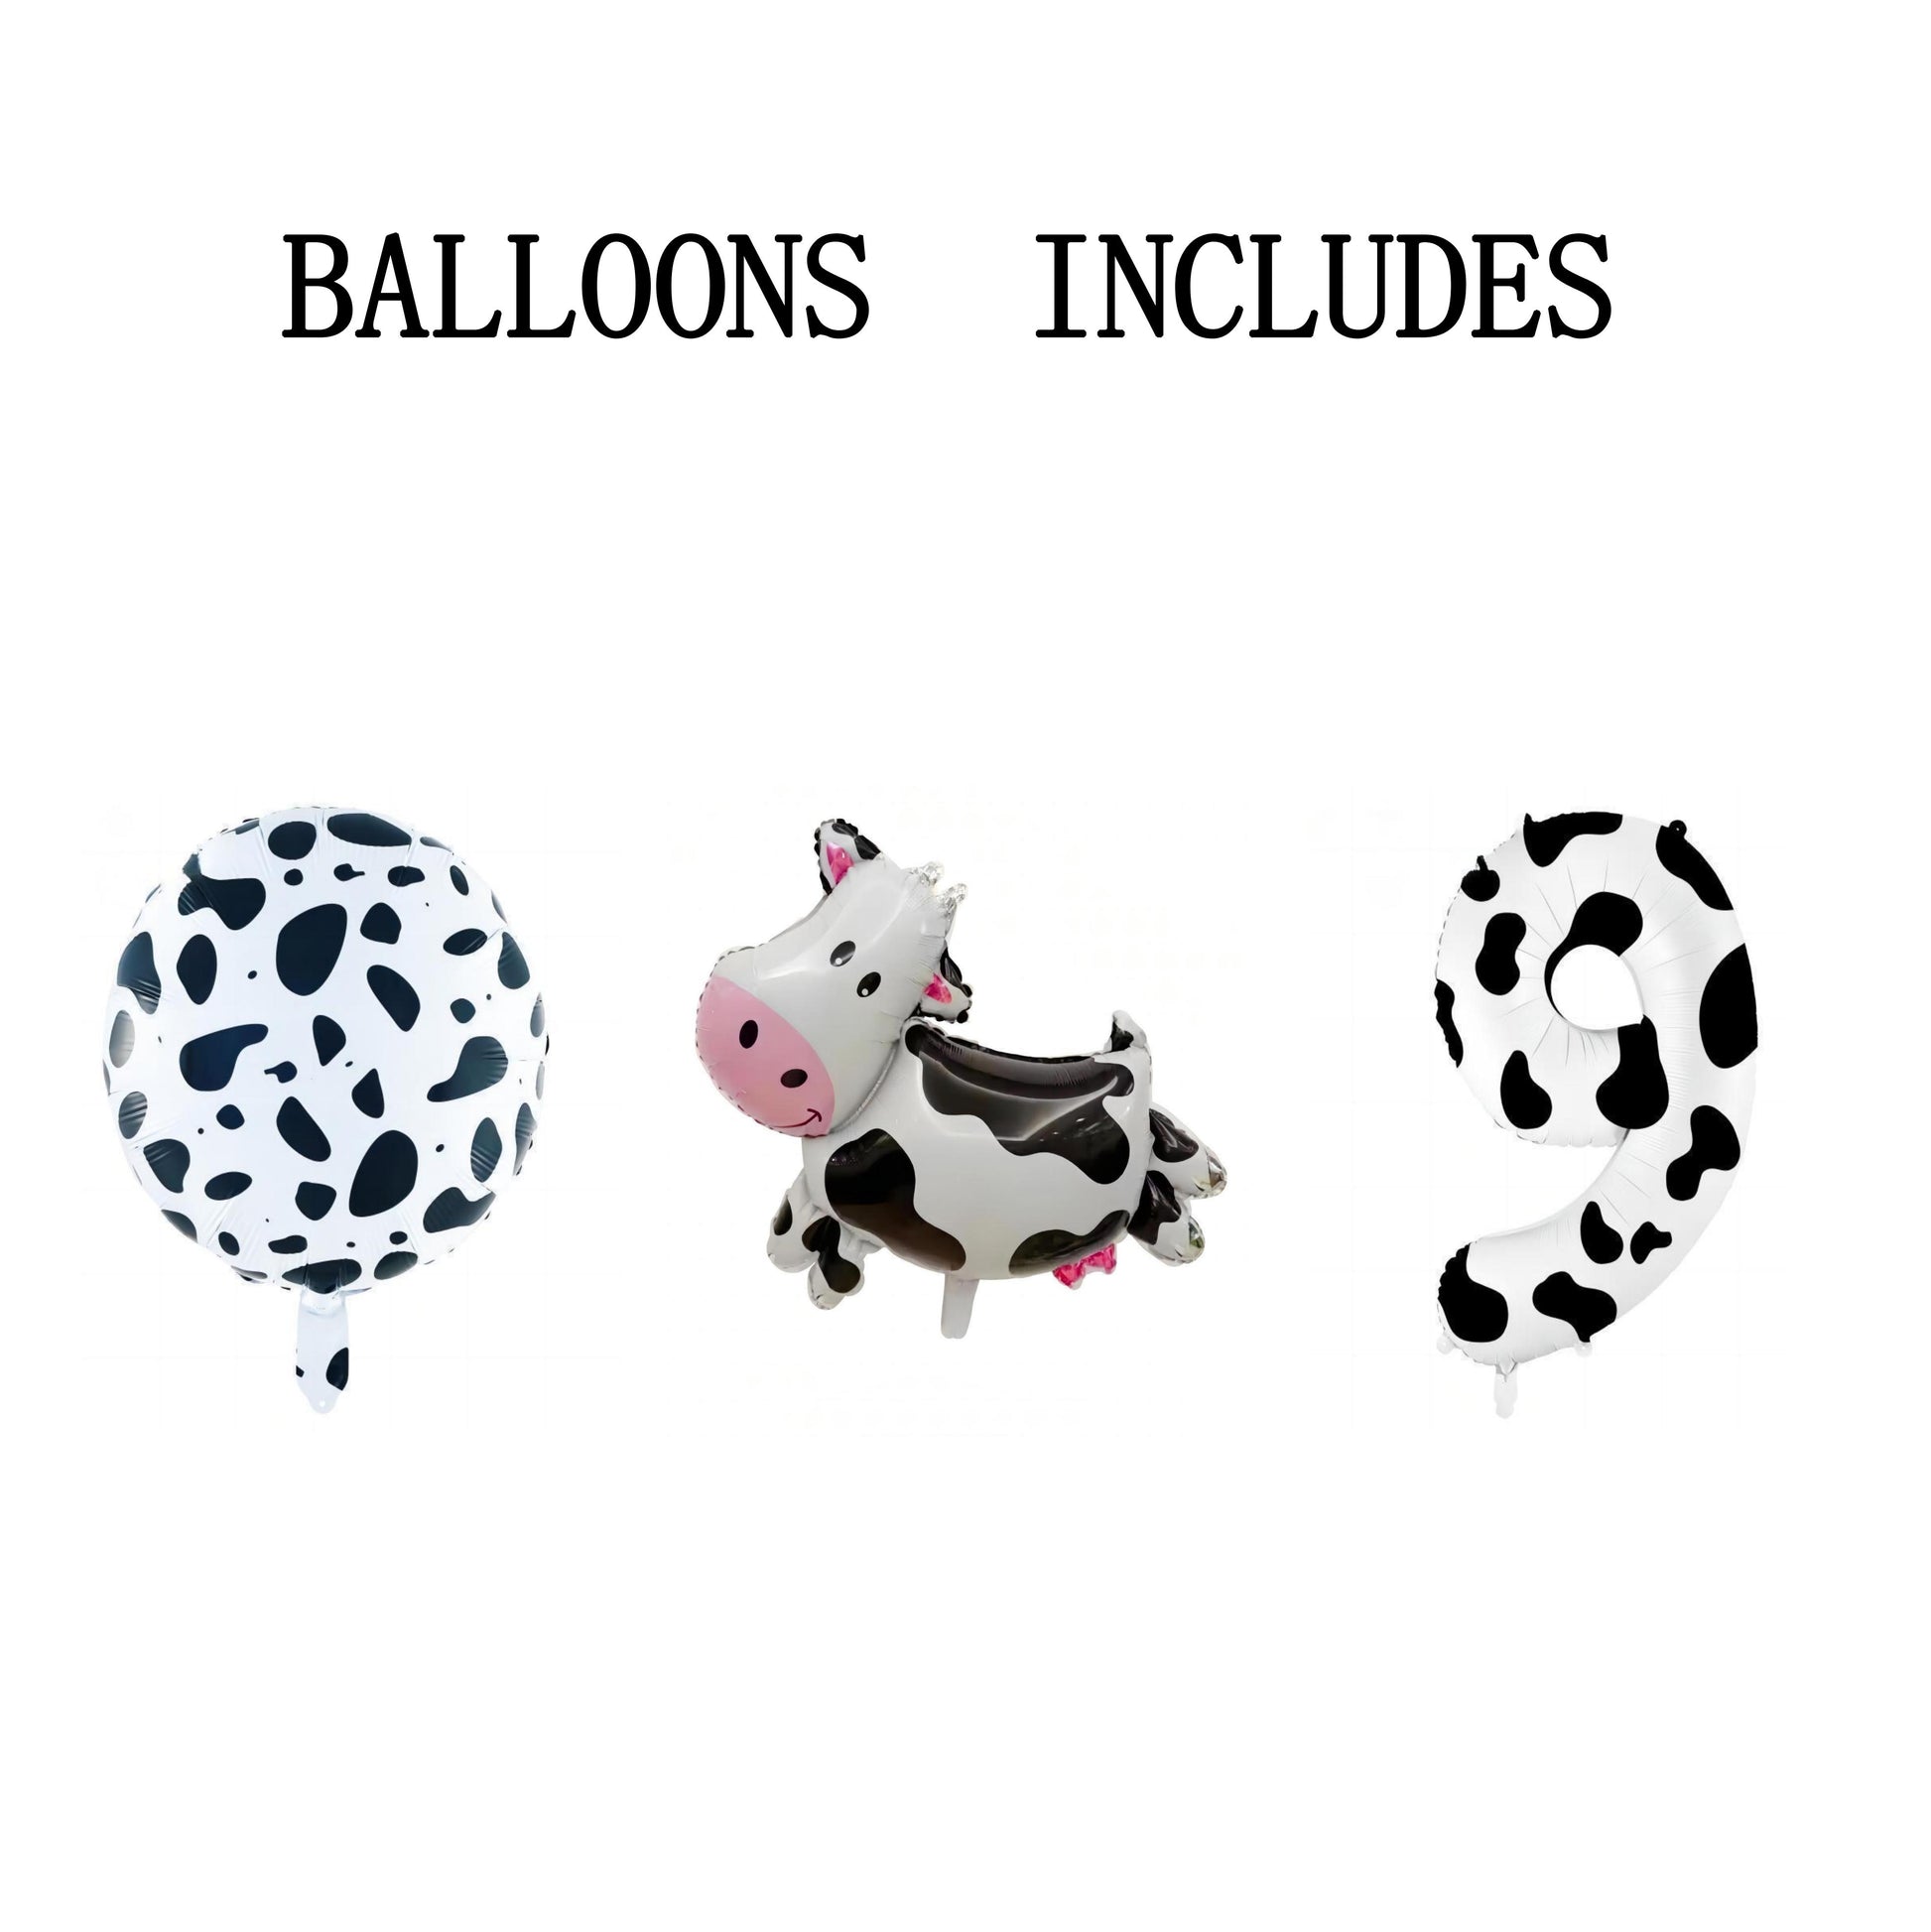 3 Pieces Cow Print Balloon Cow Shape Foil Balloons, 40 Inch Cow Print Number Balloon 1 White Cow Print Balloons Farm Animal Theme Party Decorations Supplies Animal Balloons, Birthday Balloons